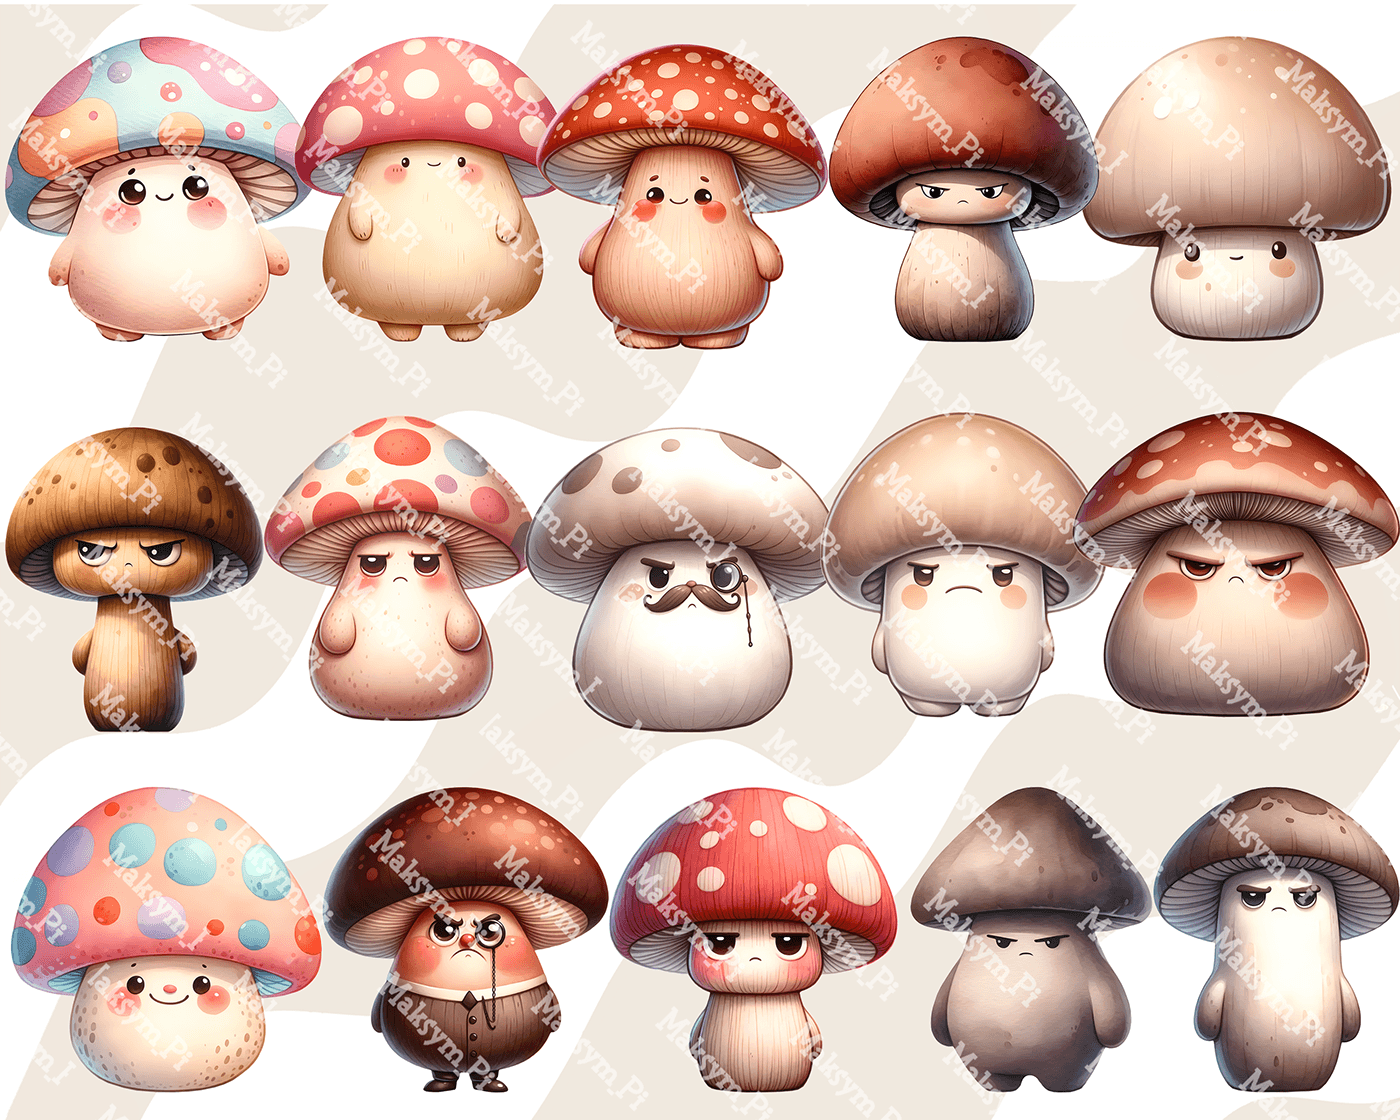 mushroom illustration mushroom clipart mushroom funny mushroom cartoon mushroom house mushroom character Mushroom Cute Mushroom Png mushroom watercolor Mushrooms kawaii